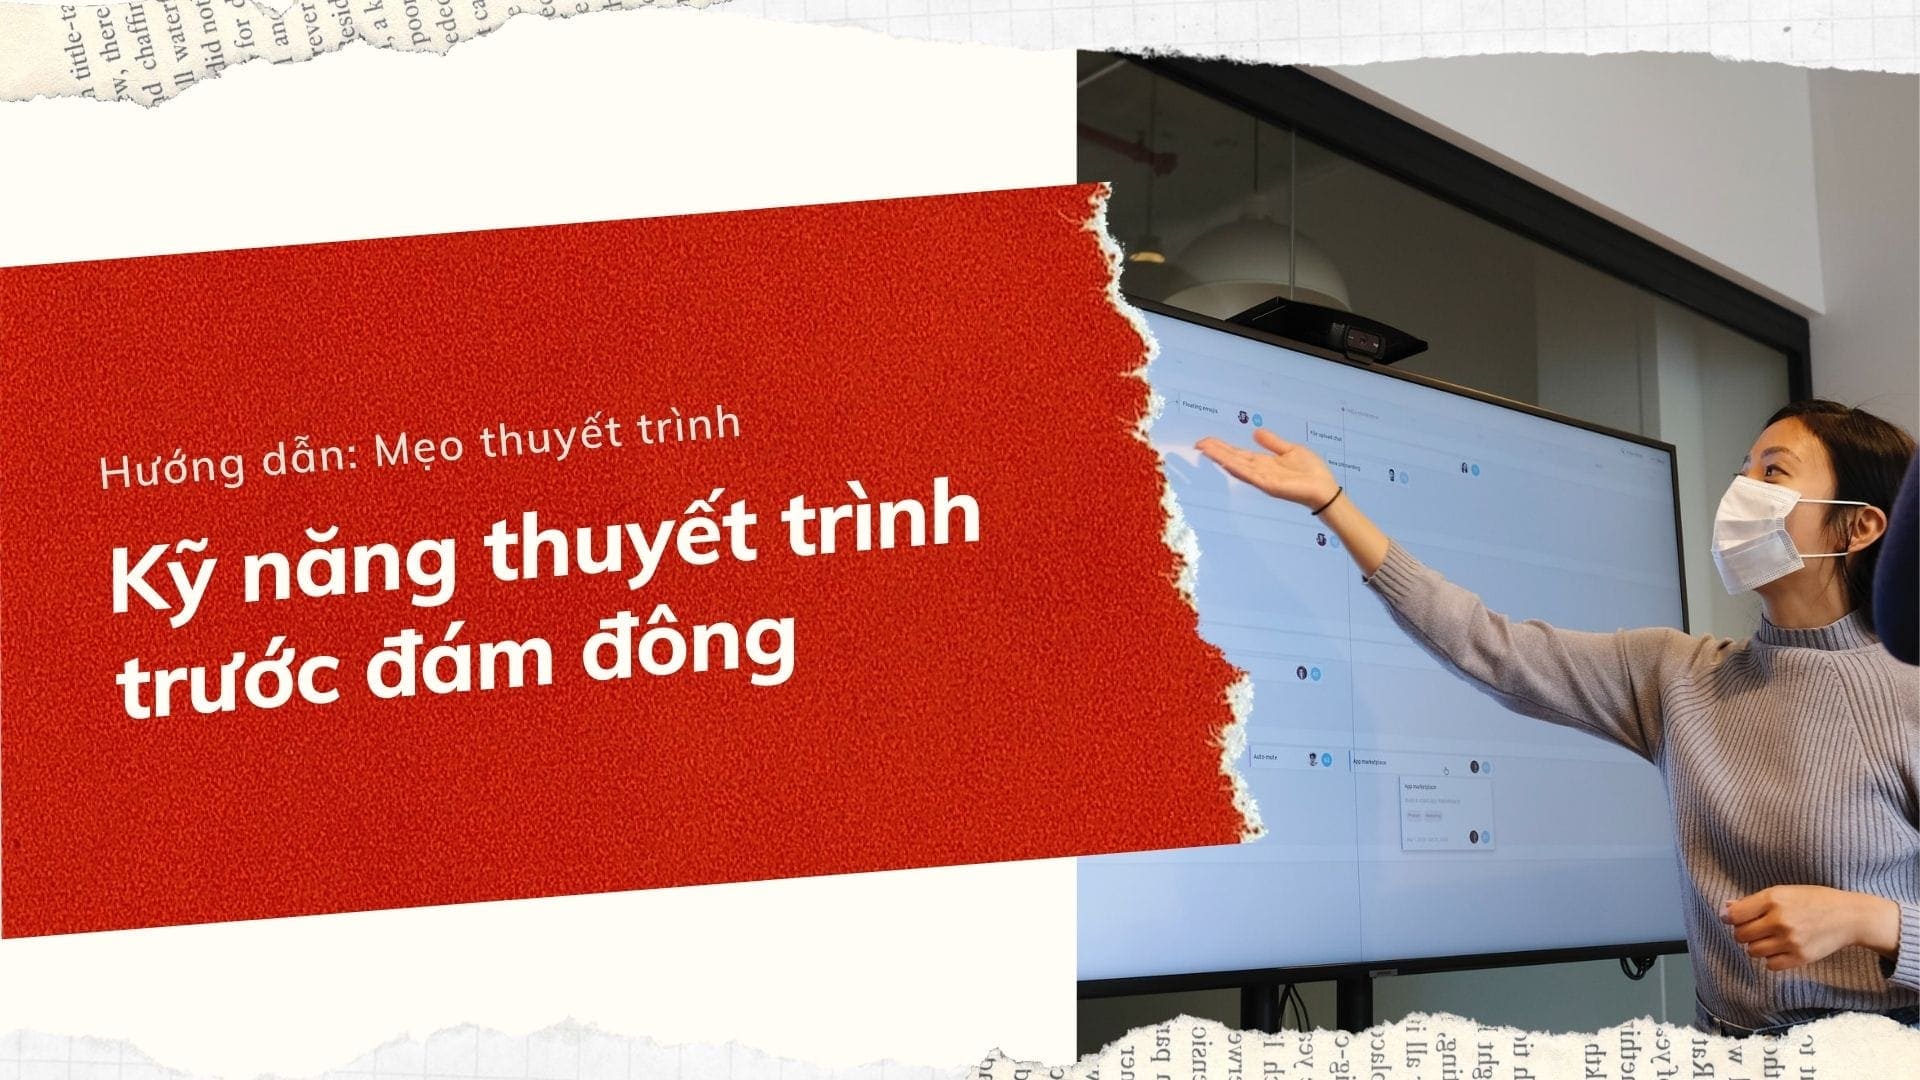 ky nang thuyet trinh truoc dam dong